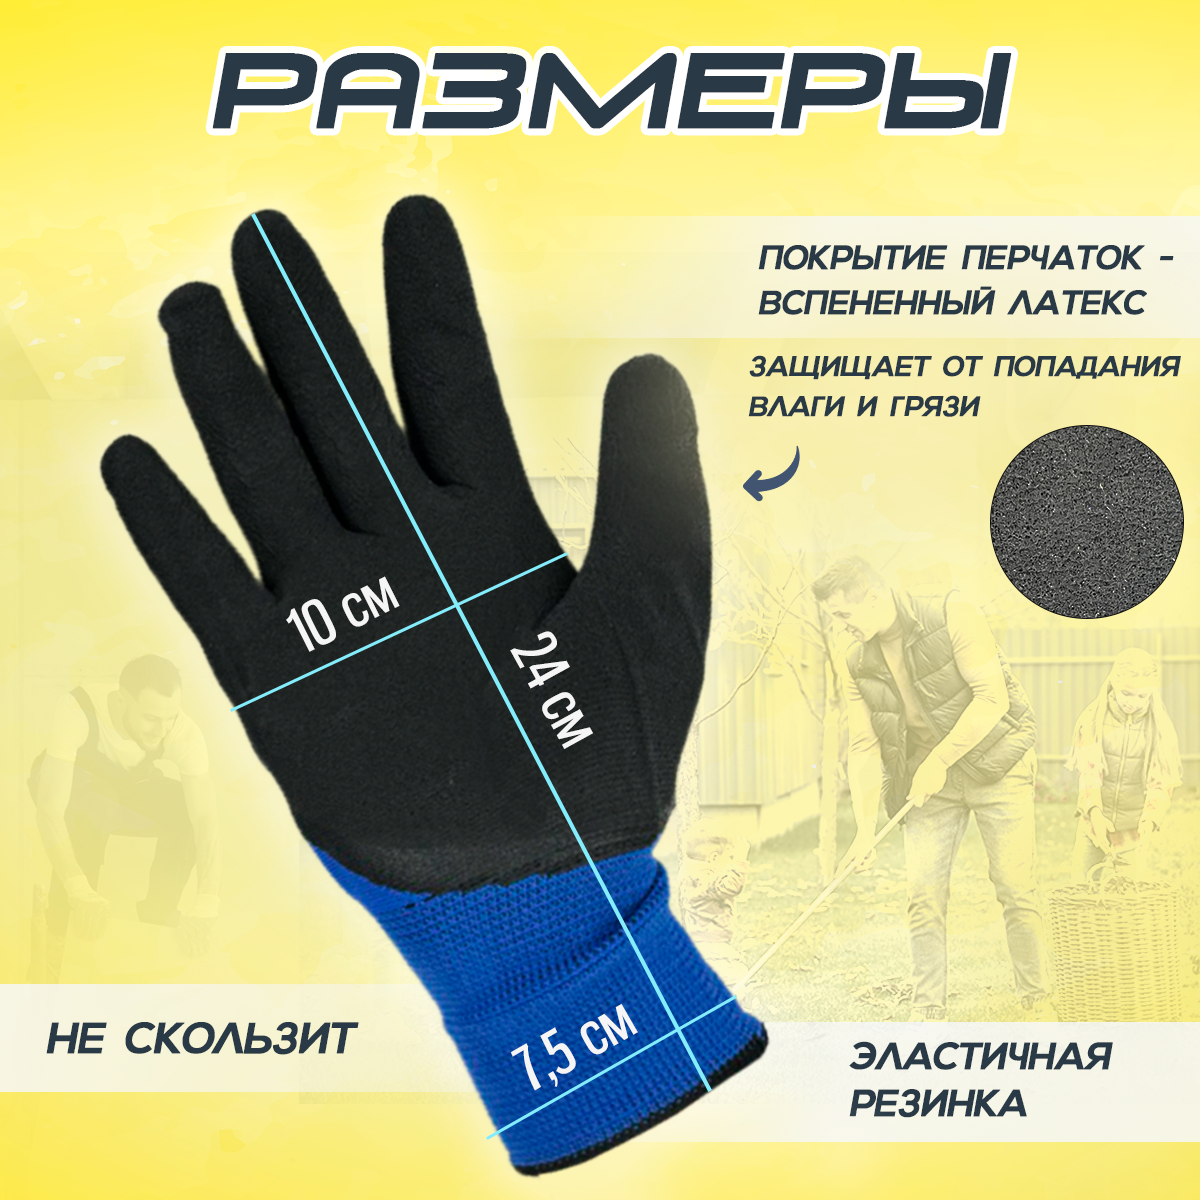 Защитные рабочие перчатки с покрытием из вспененного латекса, 6 пар, размер XL